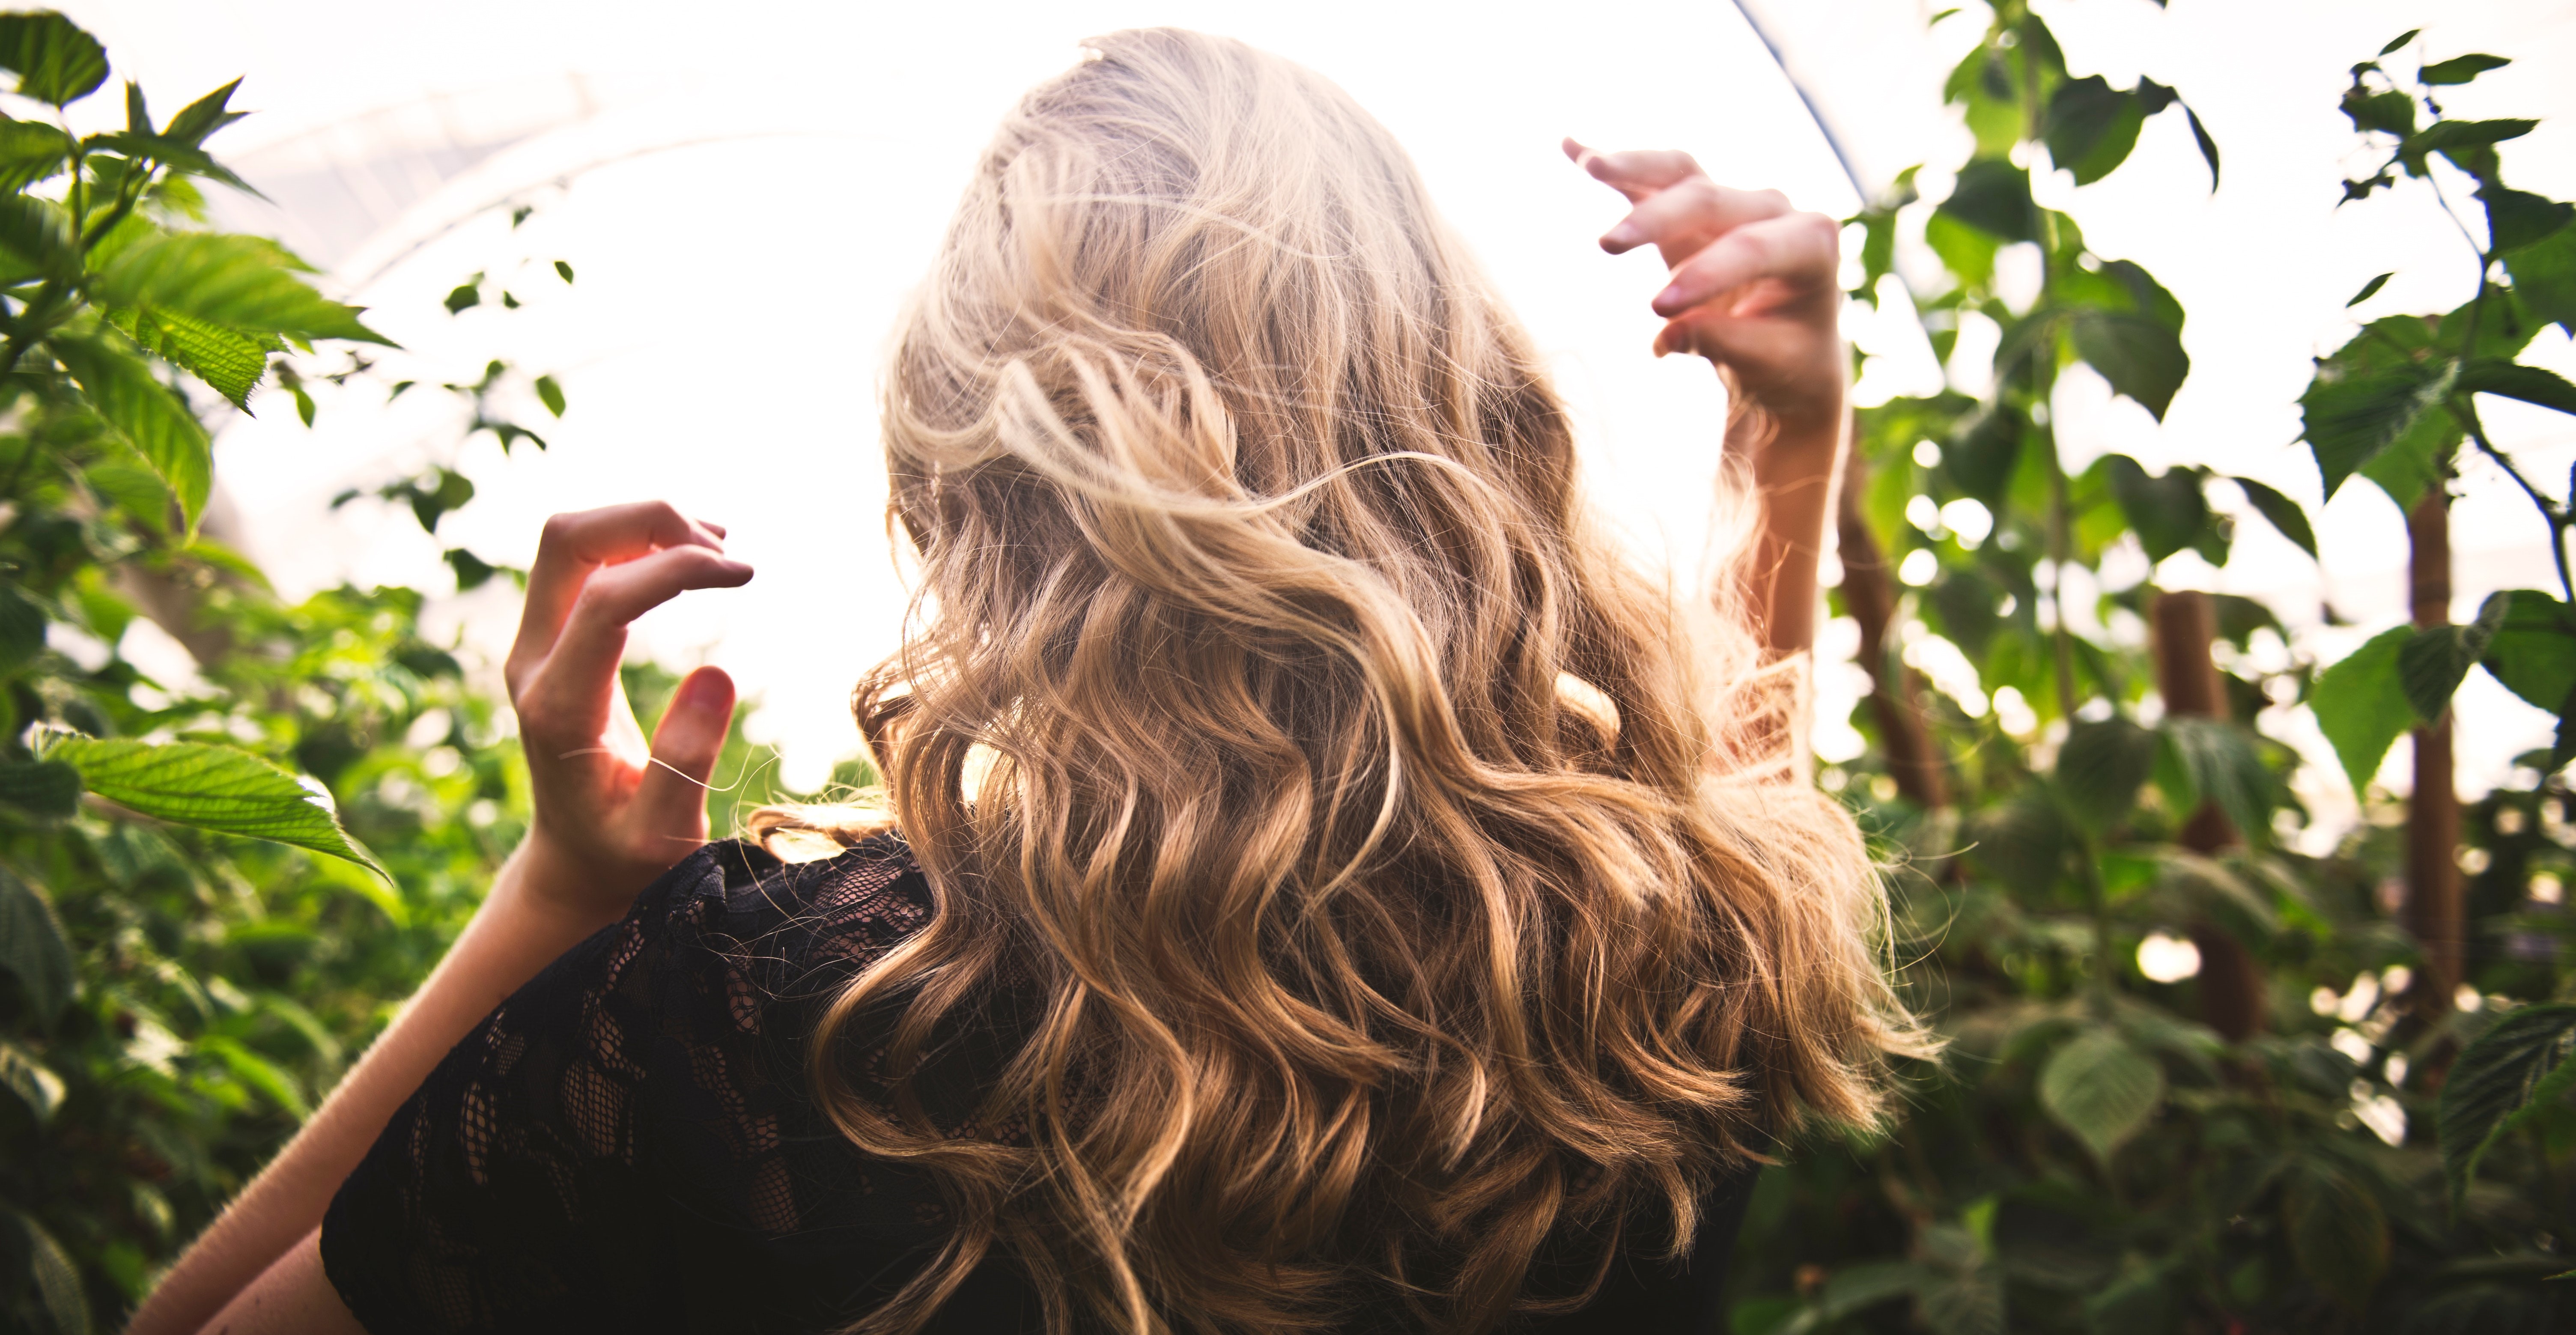 Kaip padėti plaukams augti greičiau, kad jie būtų ilgesni ir stipresni?